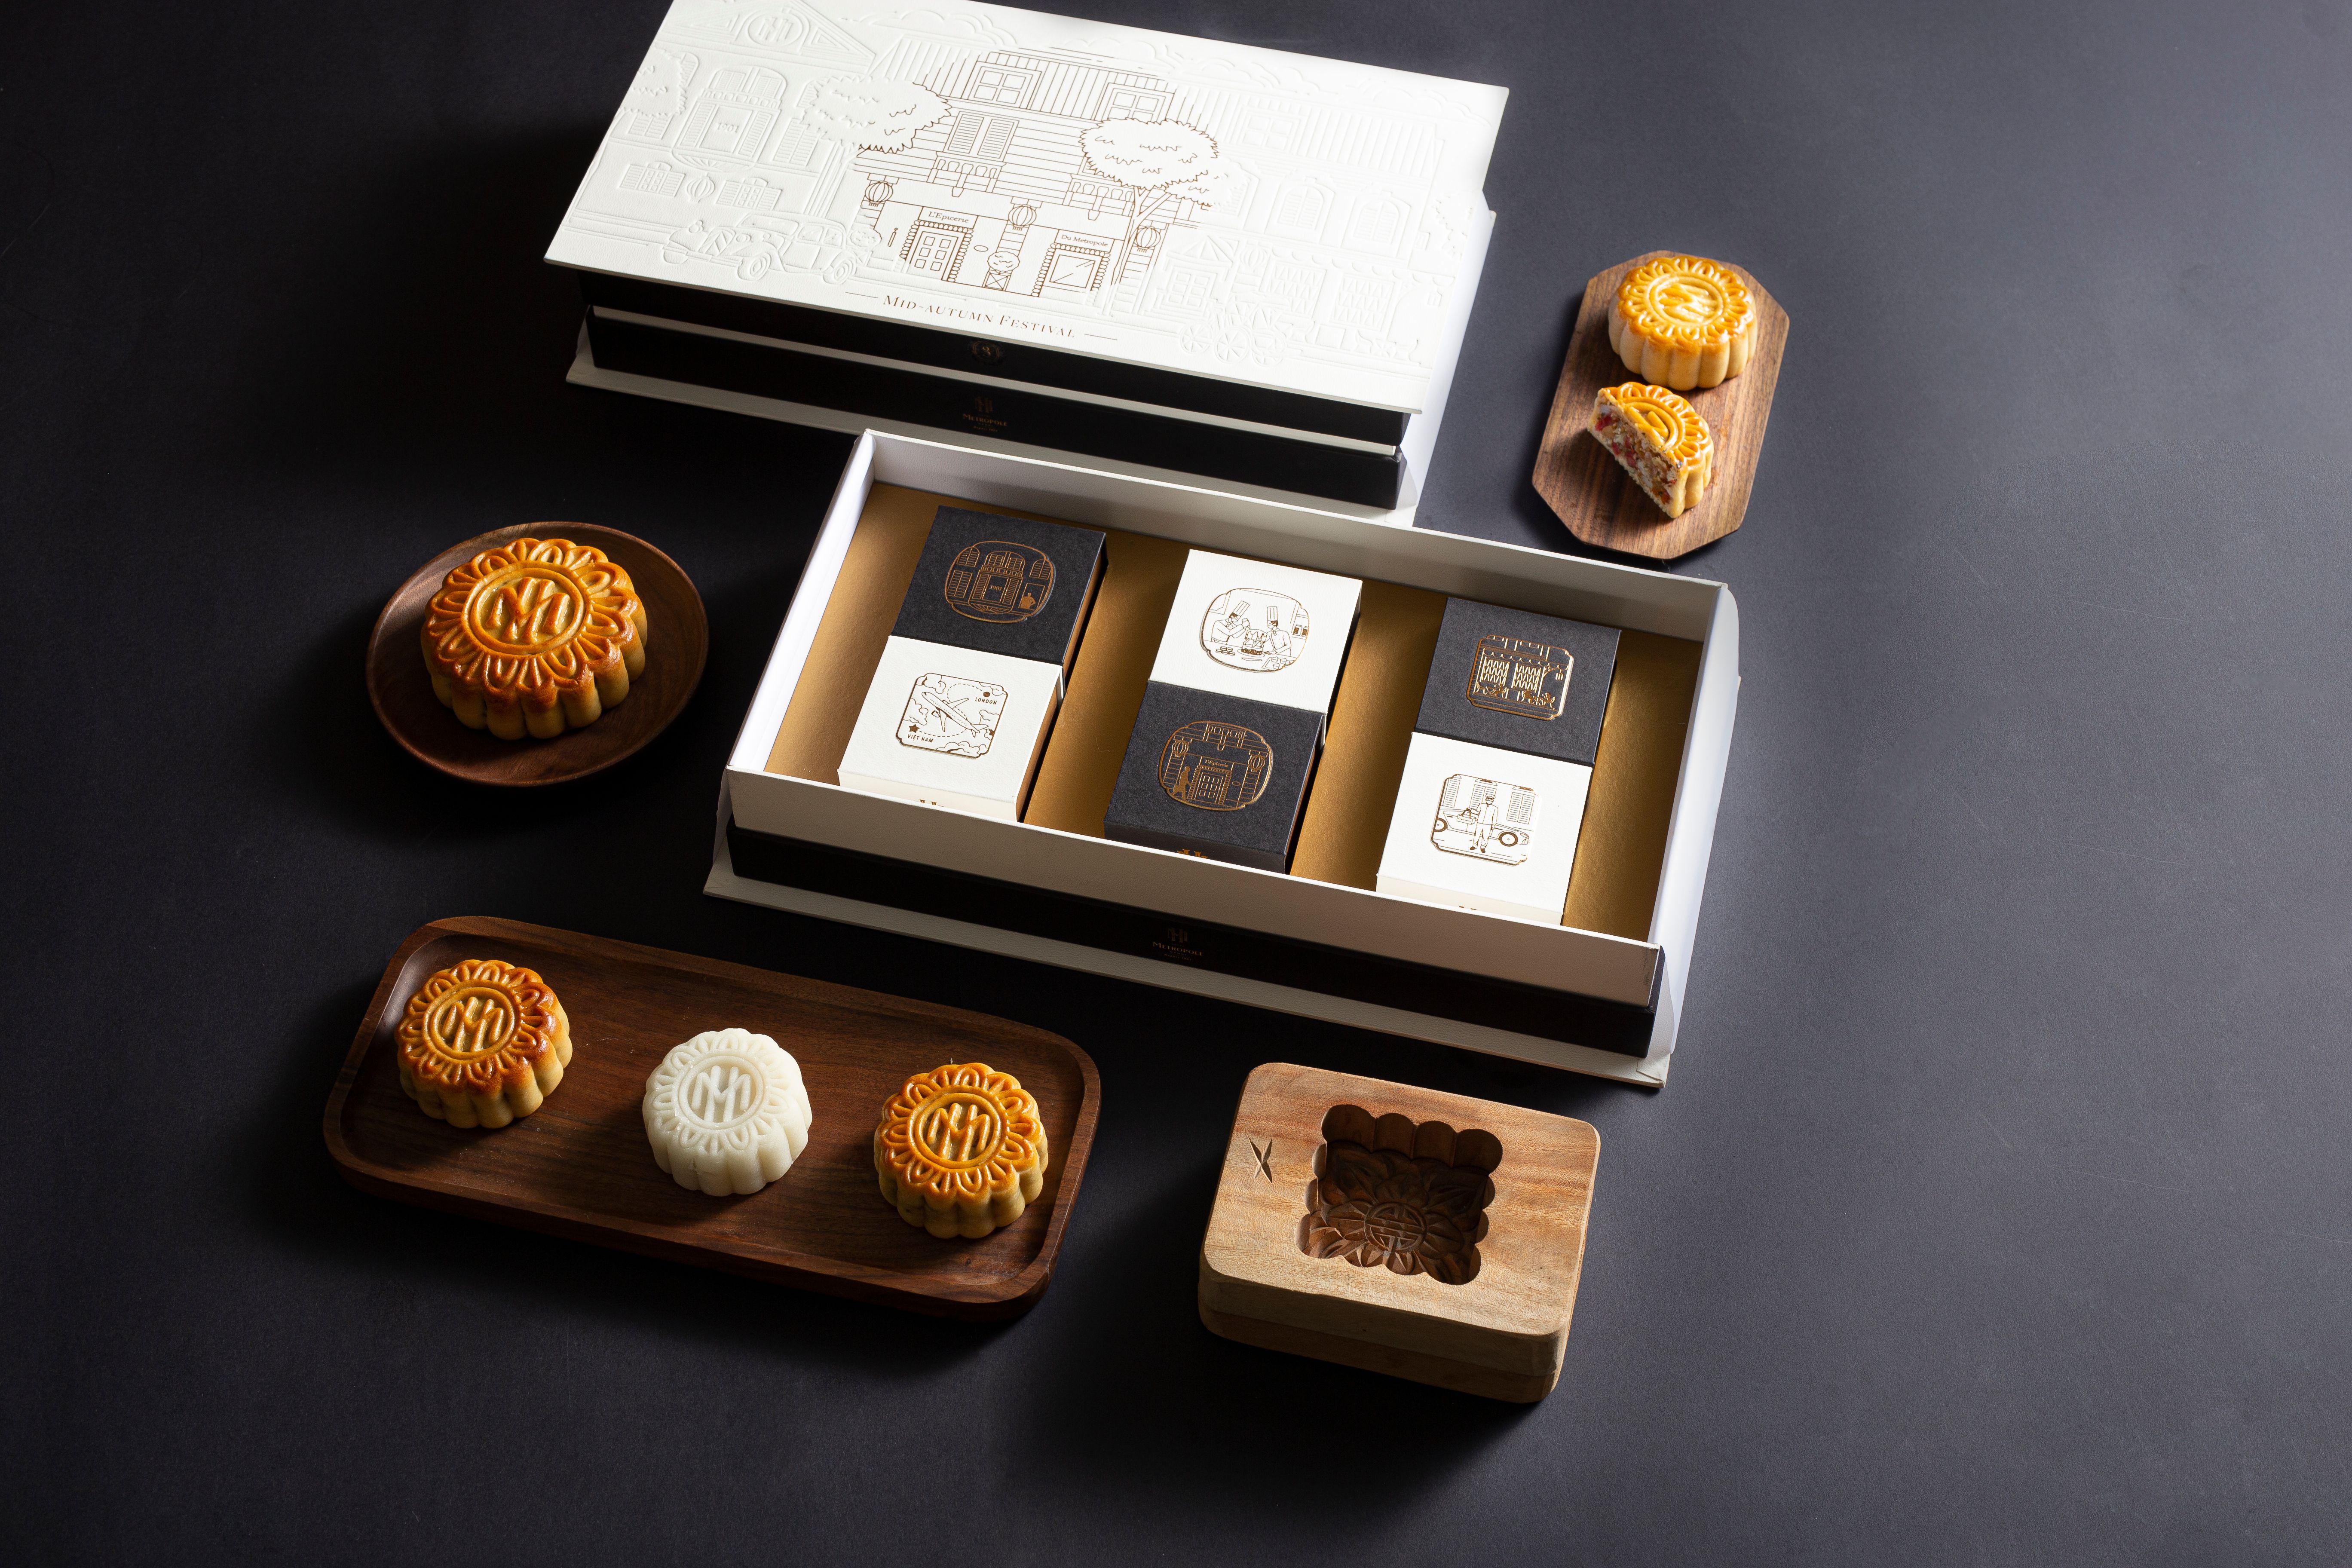 Mỗi hộp bánh được thiết kế tinh xảo với các hình ảnh vô cùng ấn tượng